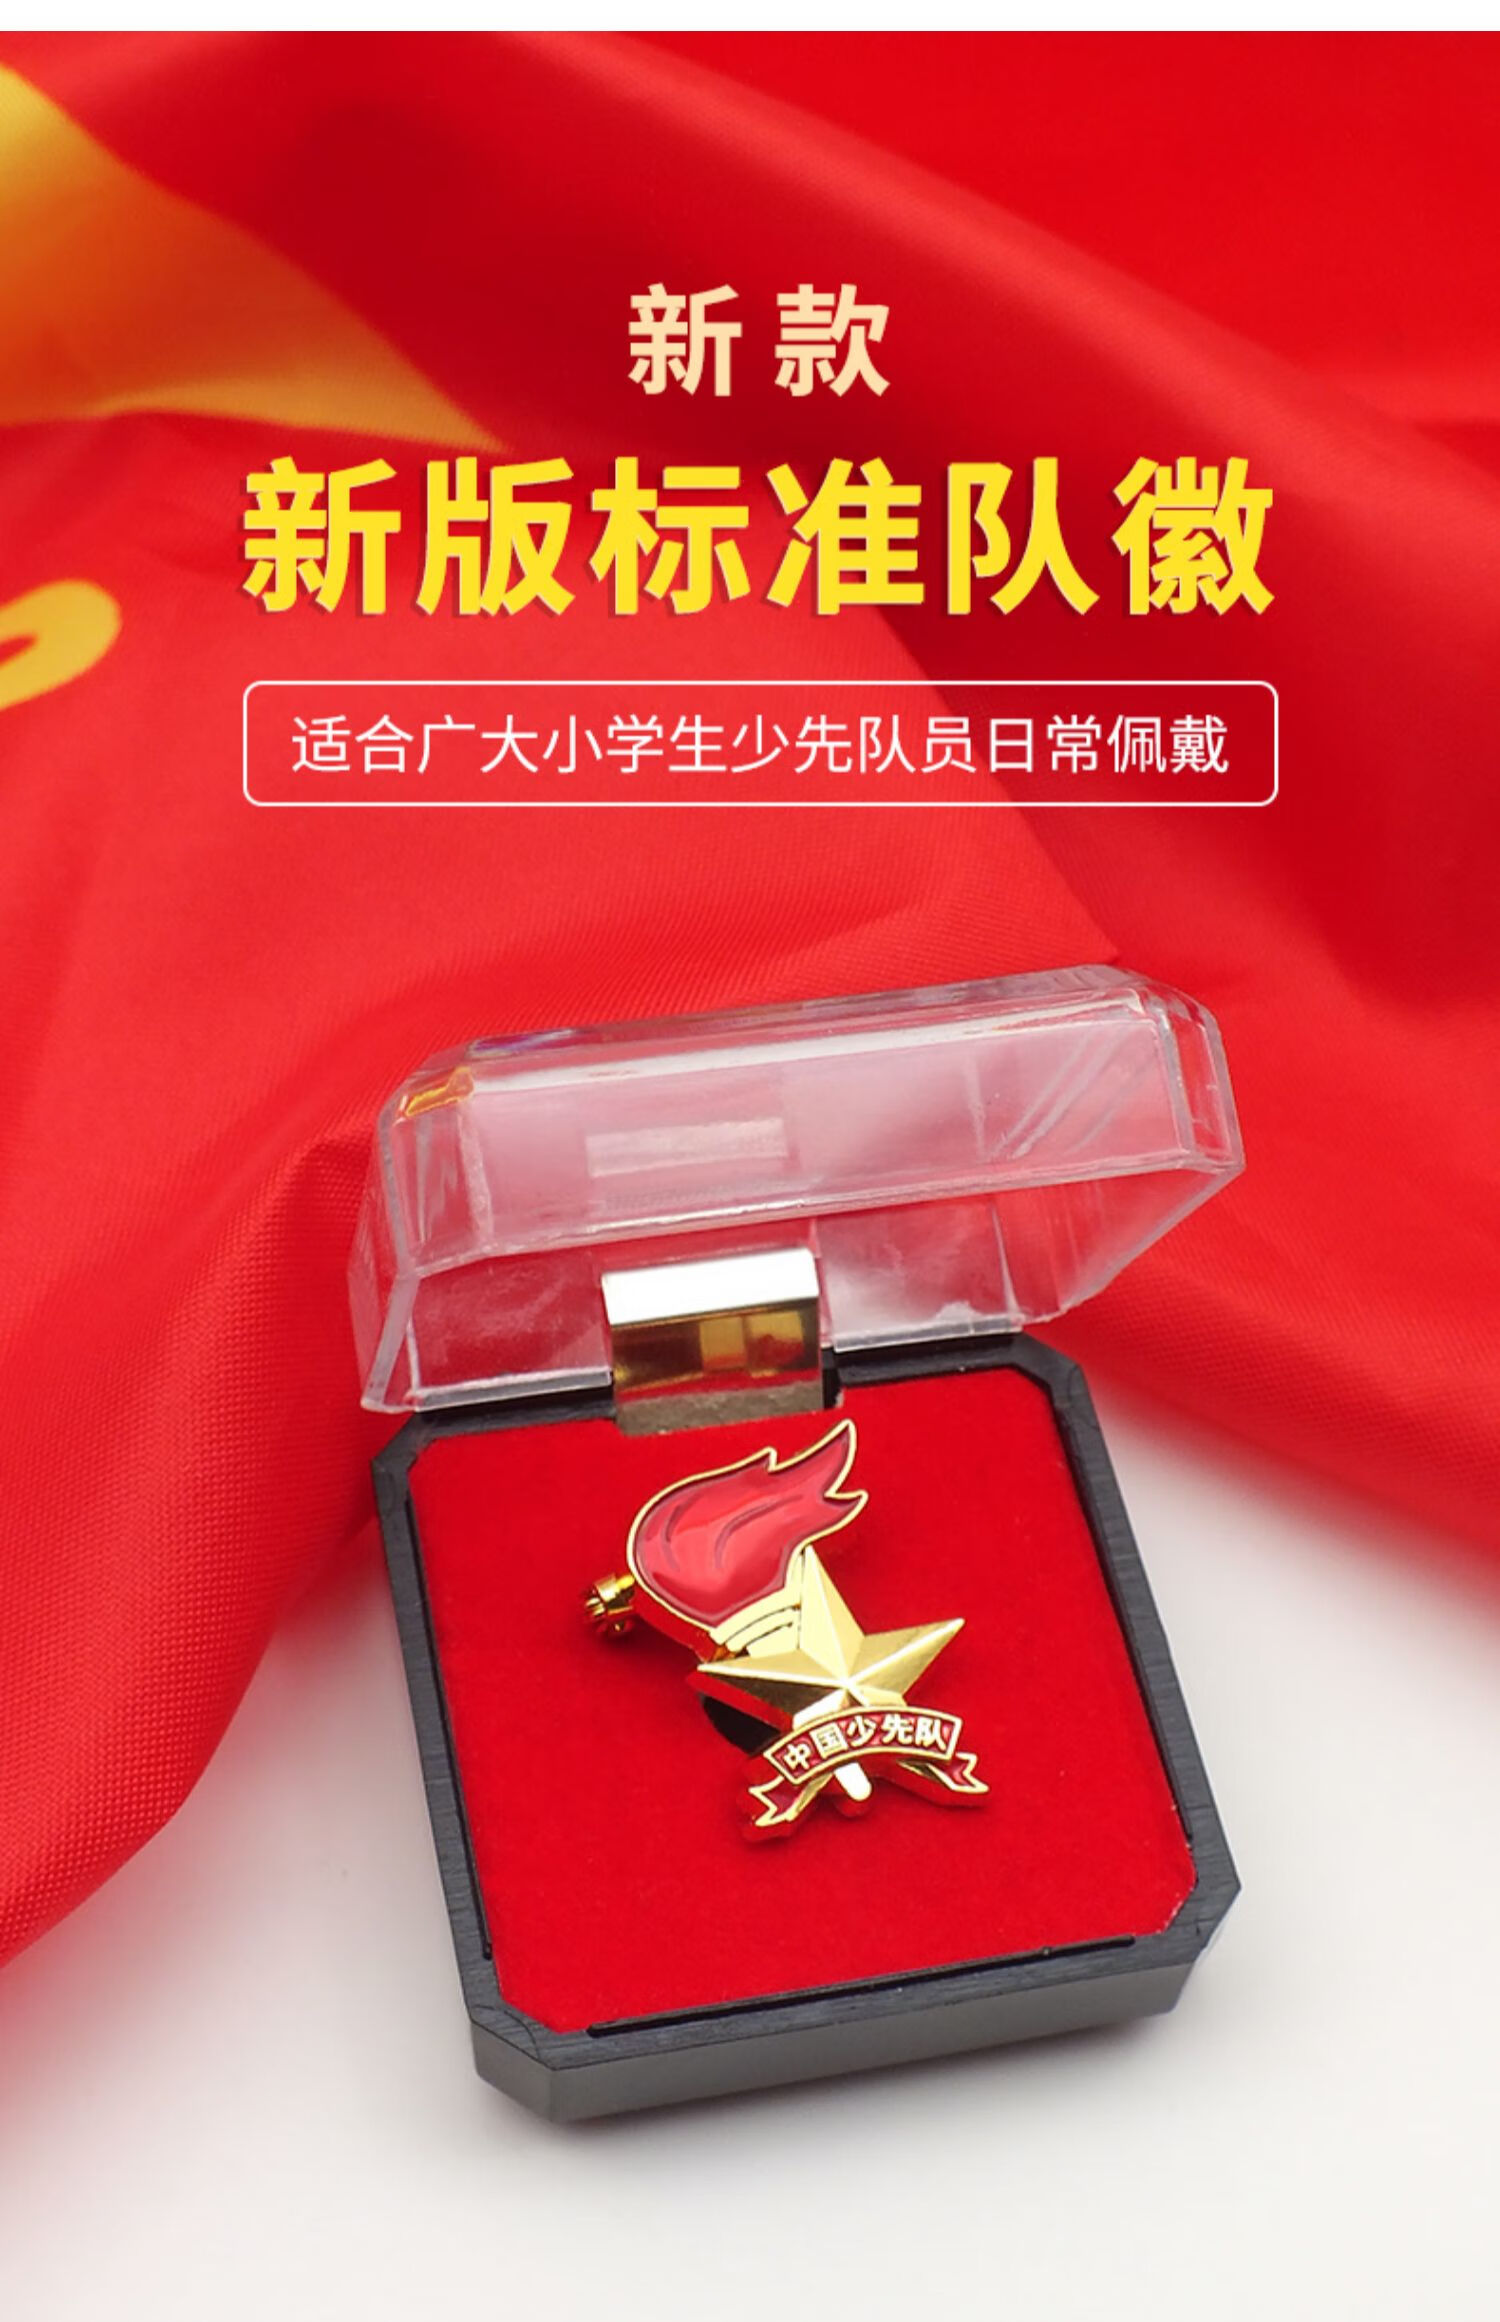 少先队队徽标准型高档中国磁铁墙贴贴纸布蝴蝶扣标准磁扣磁铁性安全